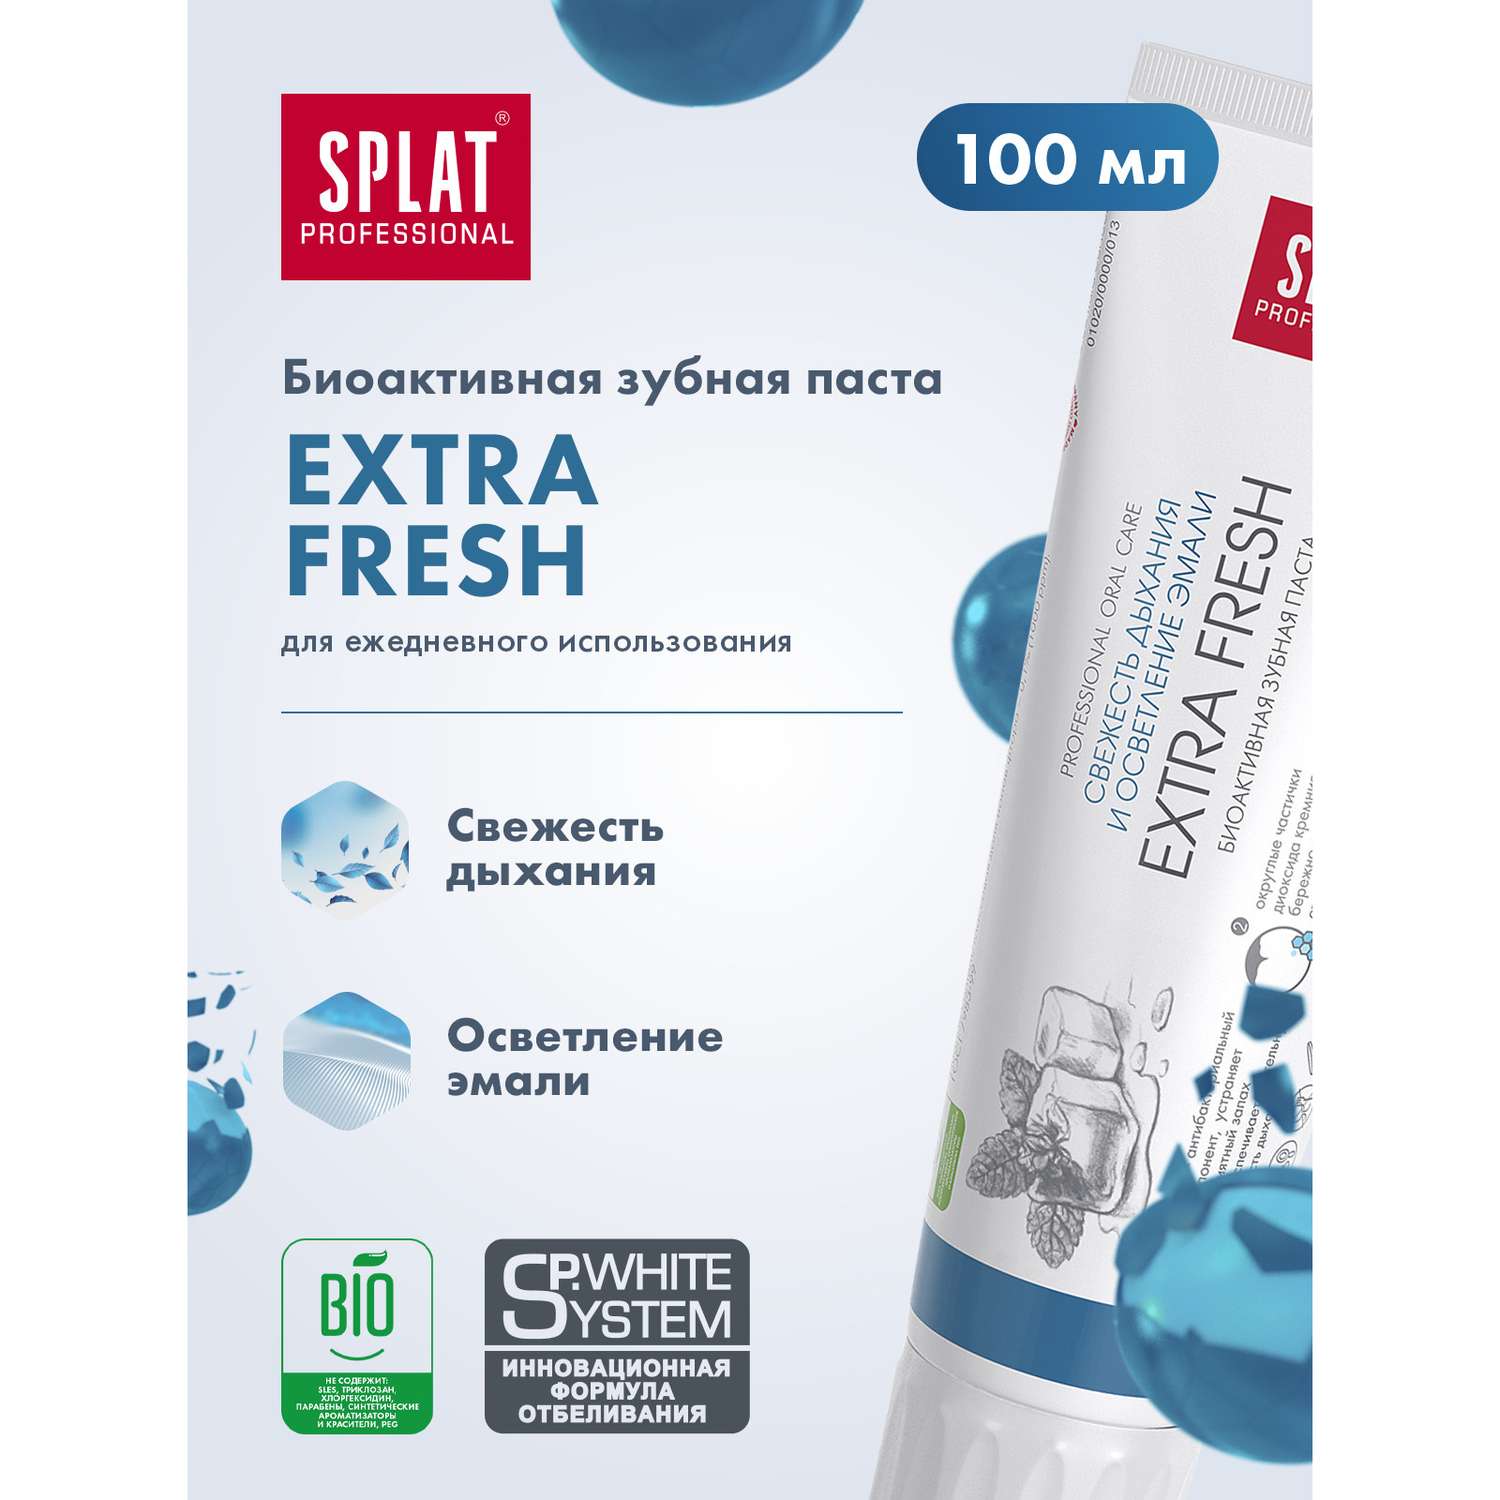 Зубная паста Splat Экстра фреш для свежести дыхания и осветления эмали 100 мл - фото 2